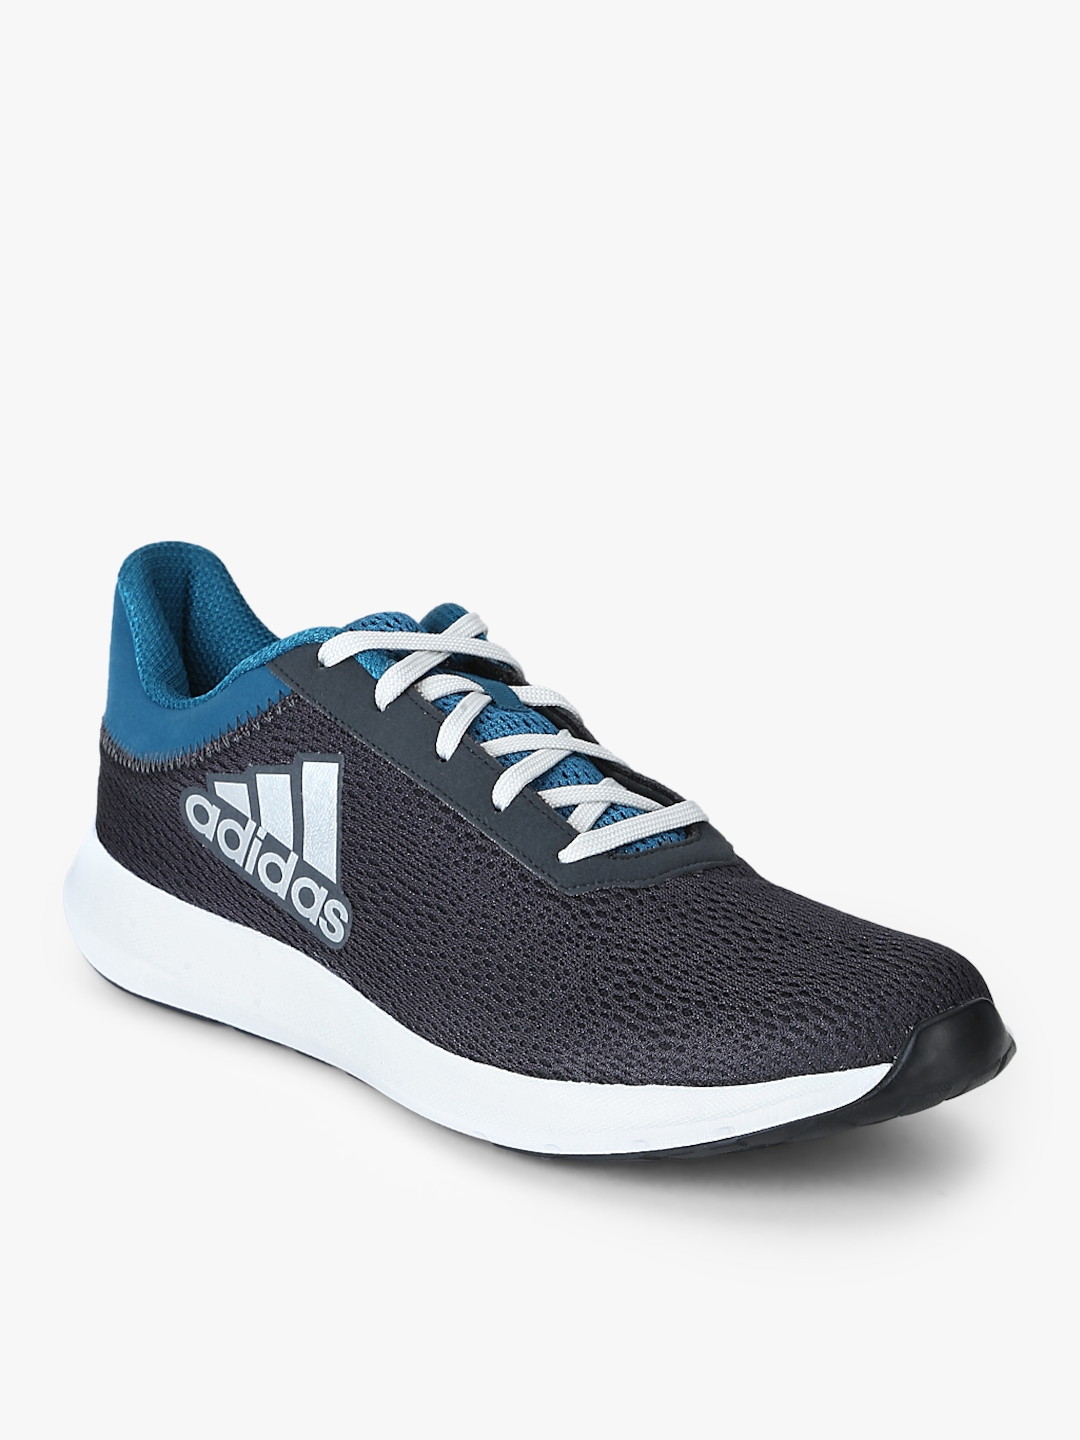 adidas men's erdiga 2.0 m running shoes